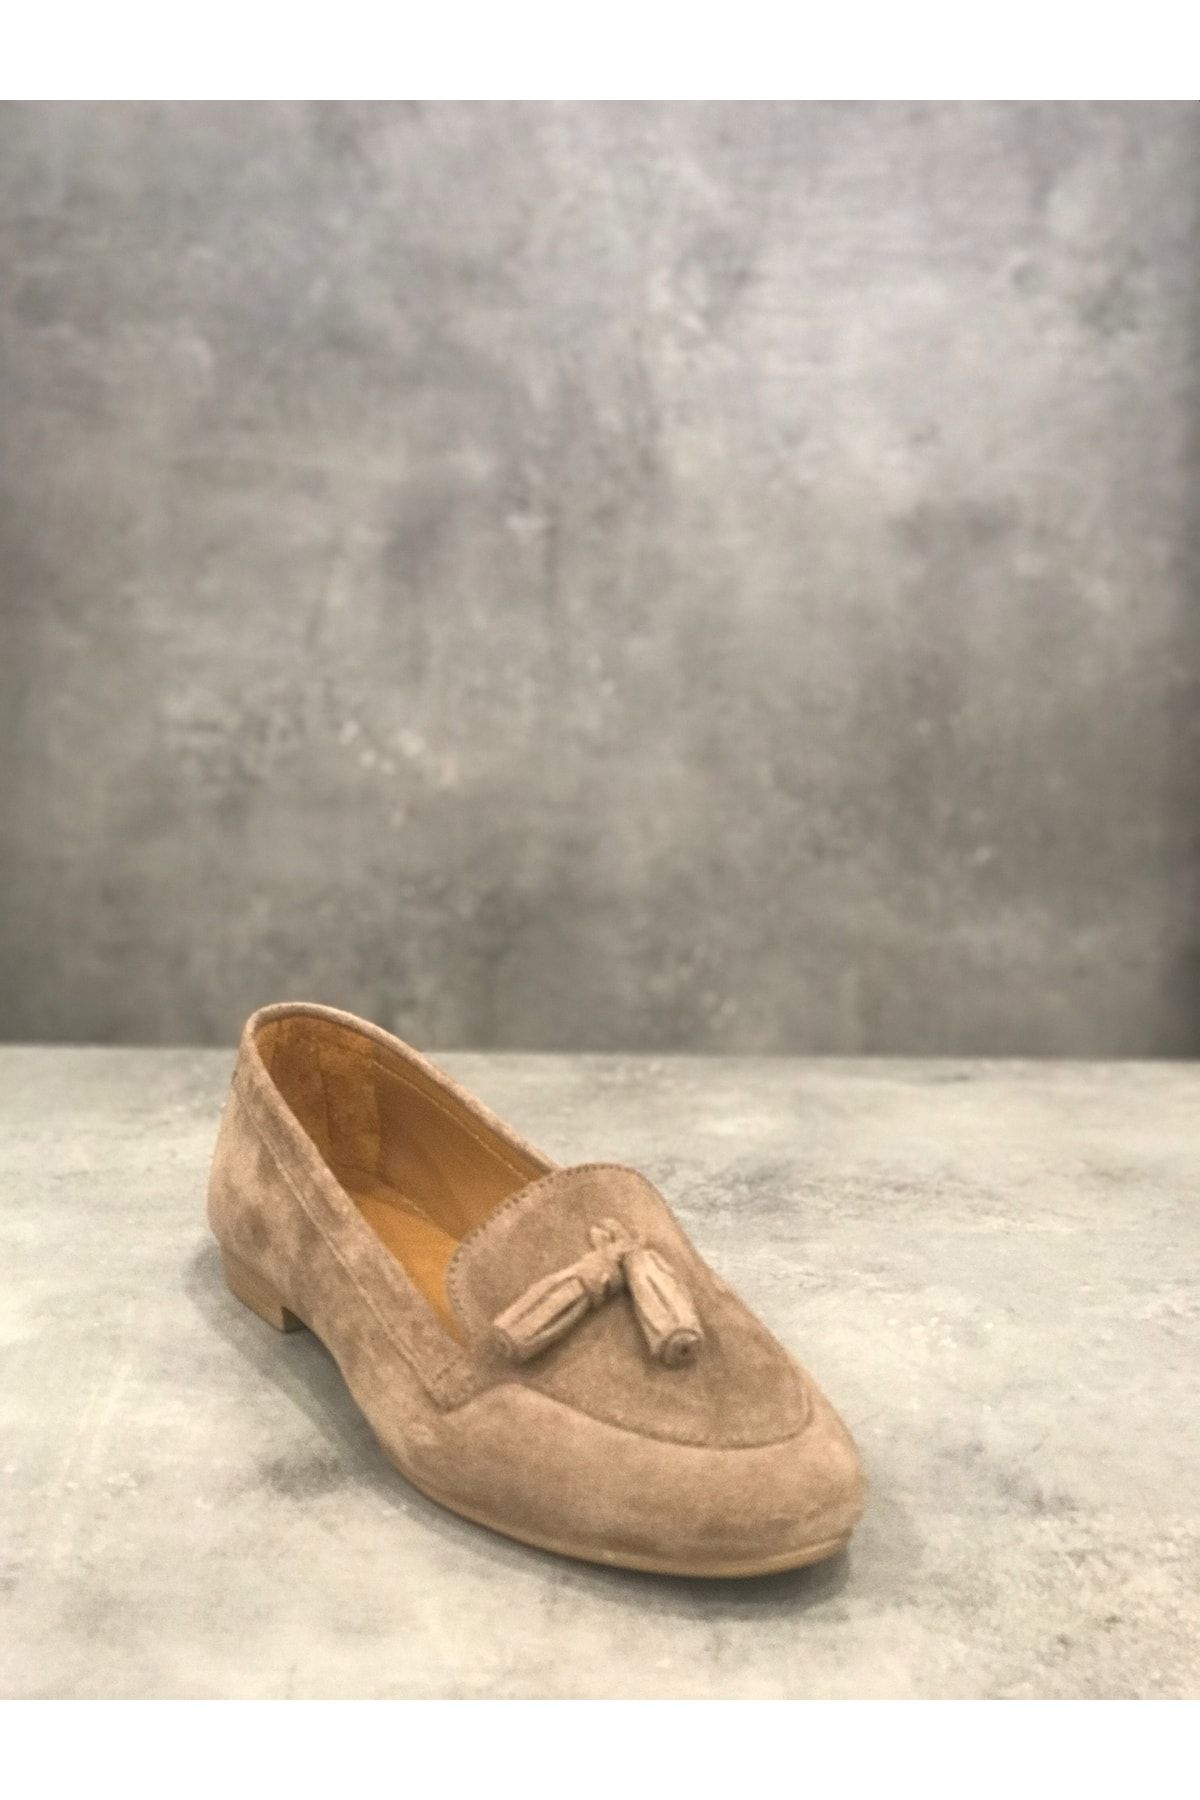 Akalın Ayakkabı Bio Detox Kadın Günlük Şık Ortopedik Taban Özel Koleksiyon El Yapımı Hakiki Deri Ayakkabı